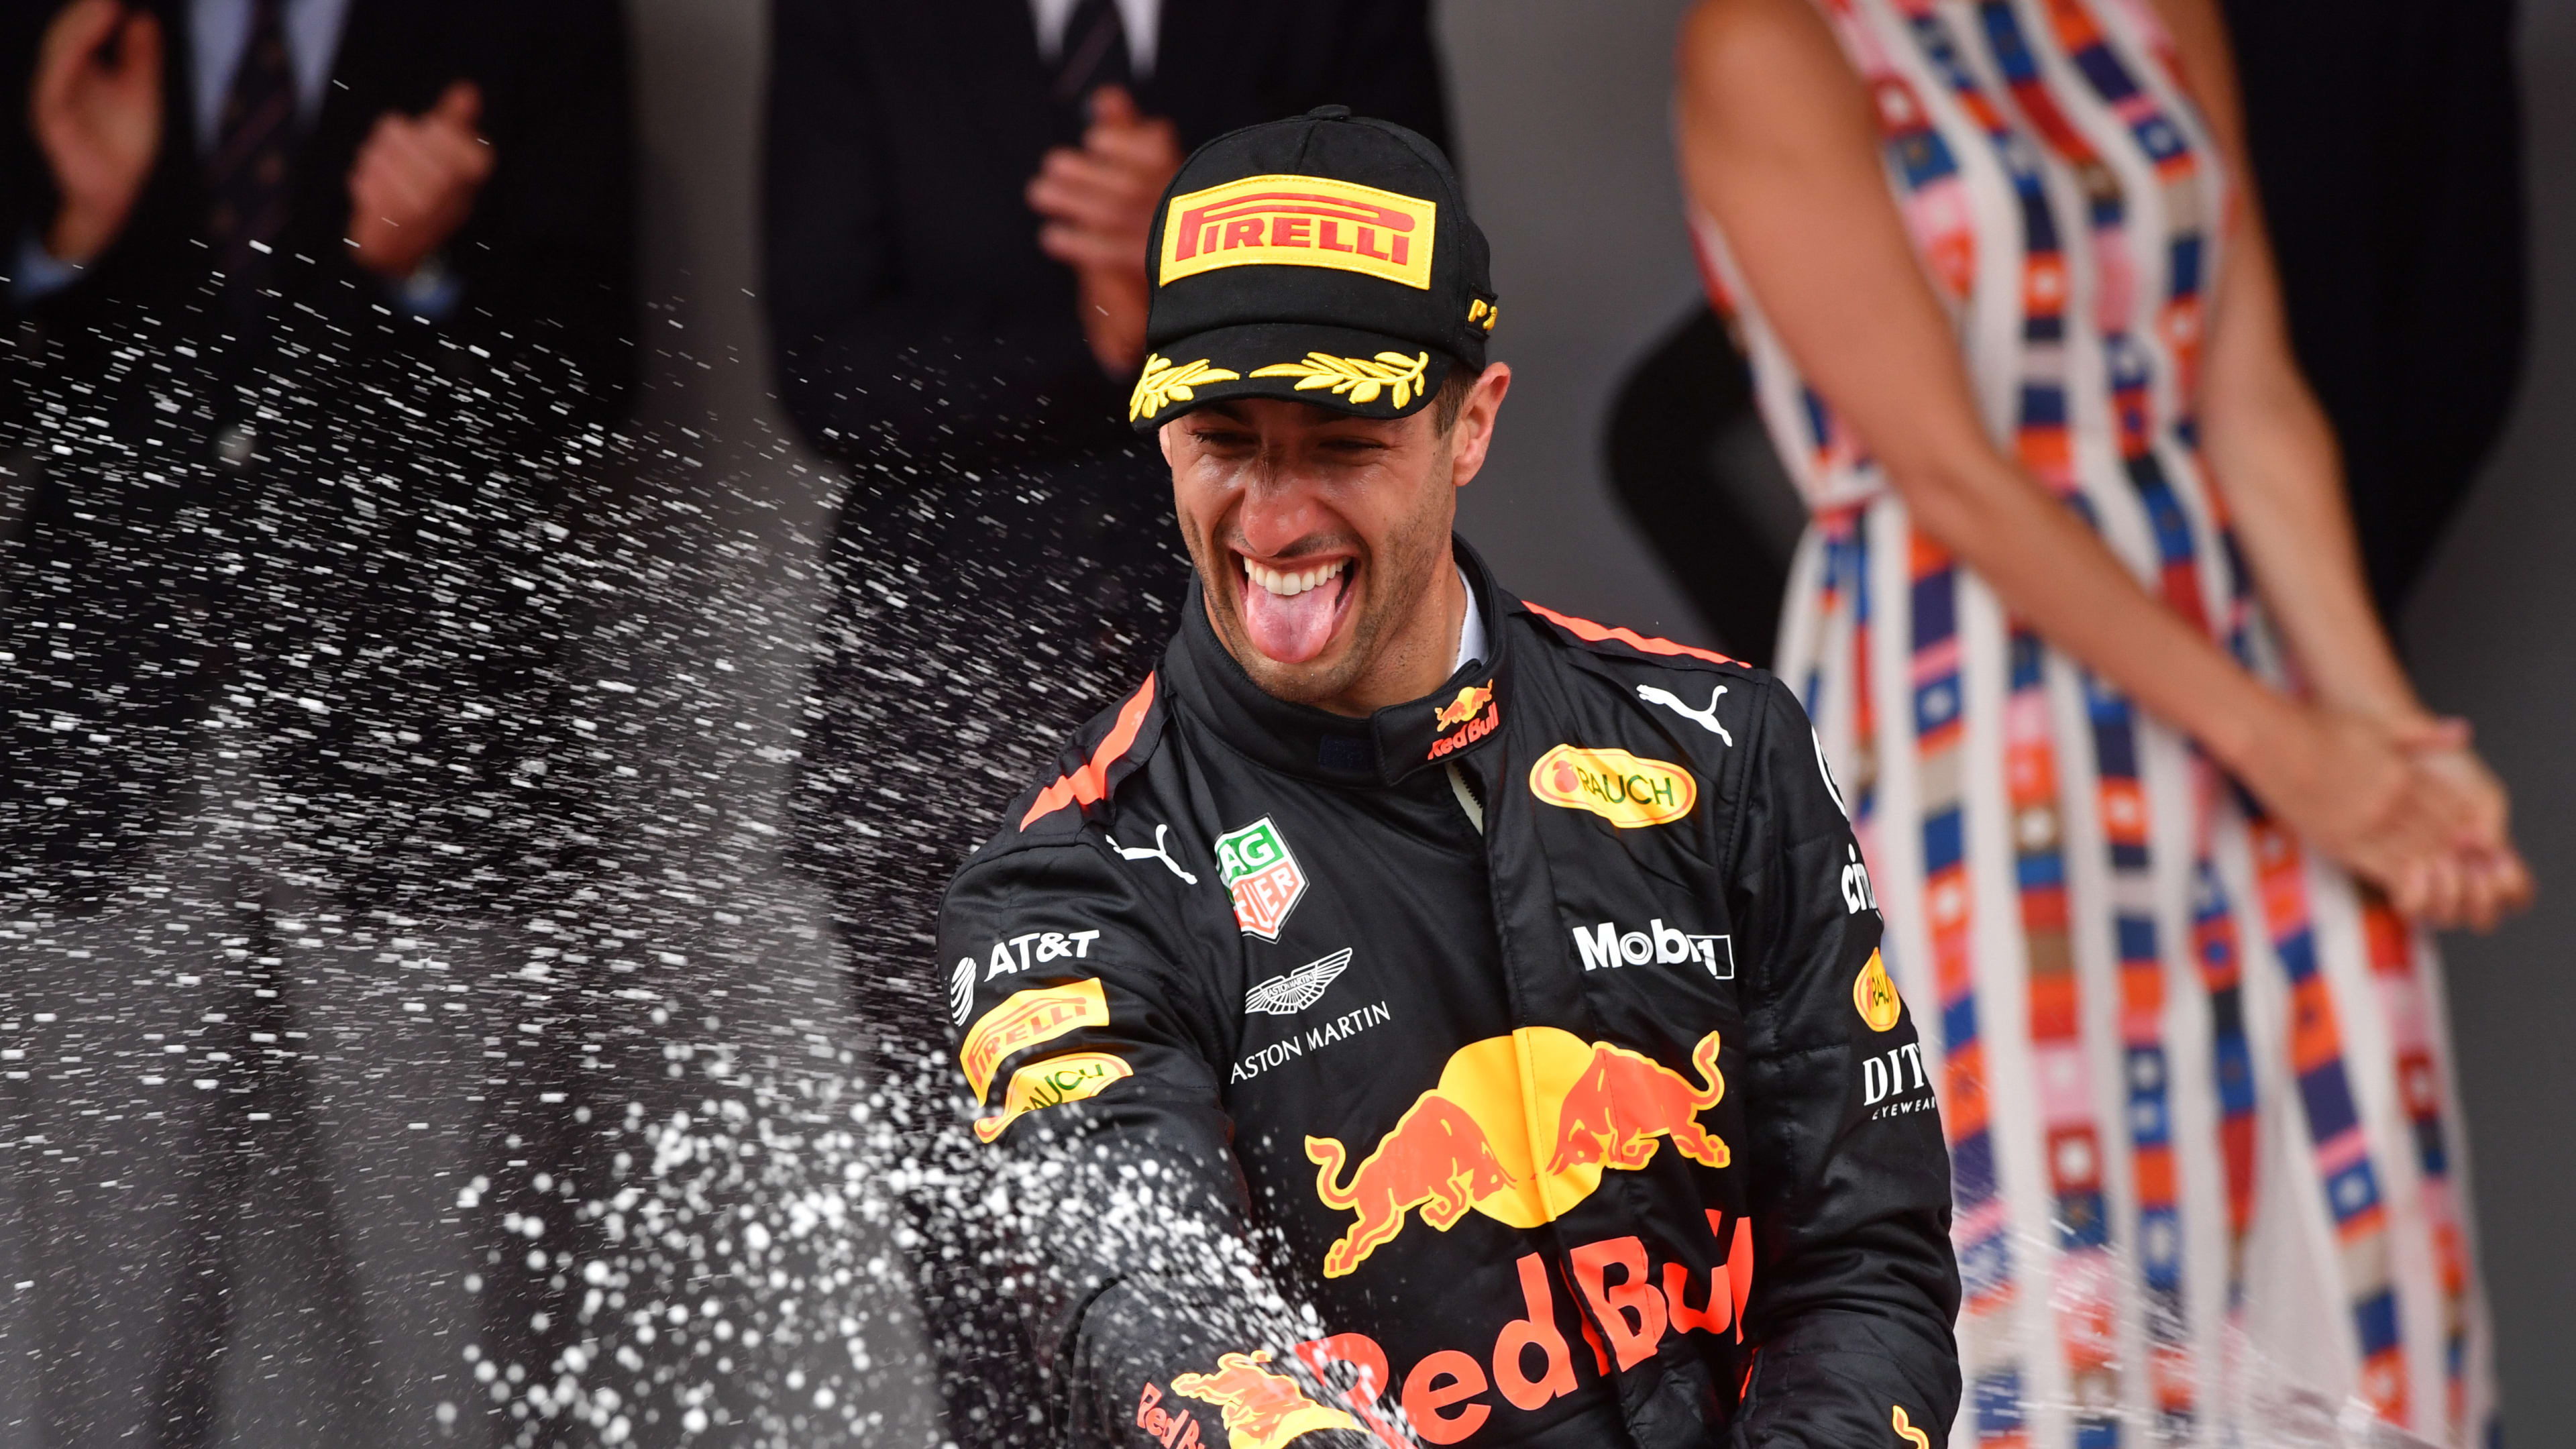 Monaco win 'redemption' for 2016 loss - Ricciardo